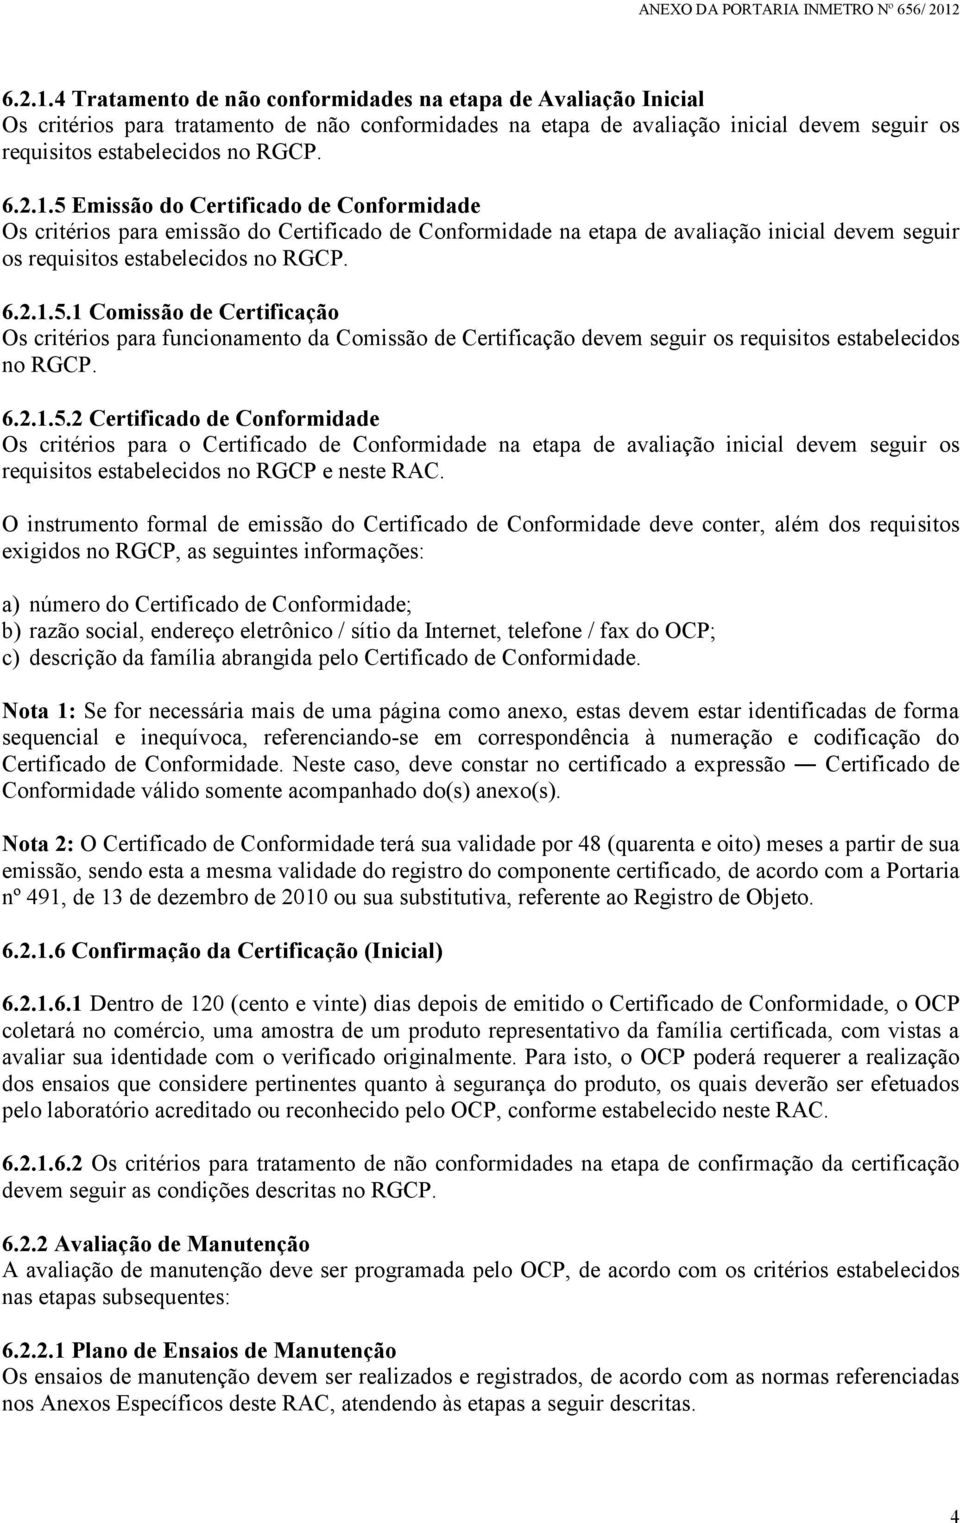 6.2.1.5.2 Certificado de Conformidade Os critérios para o Certificado de Conformidade na etapa de avaliação inicial devem seguir os requisitos estabelecidos no RGCP e neste RAC.